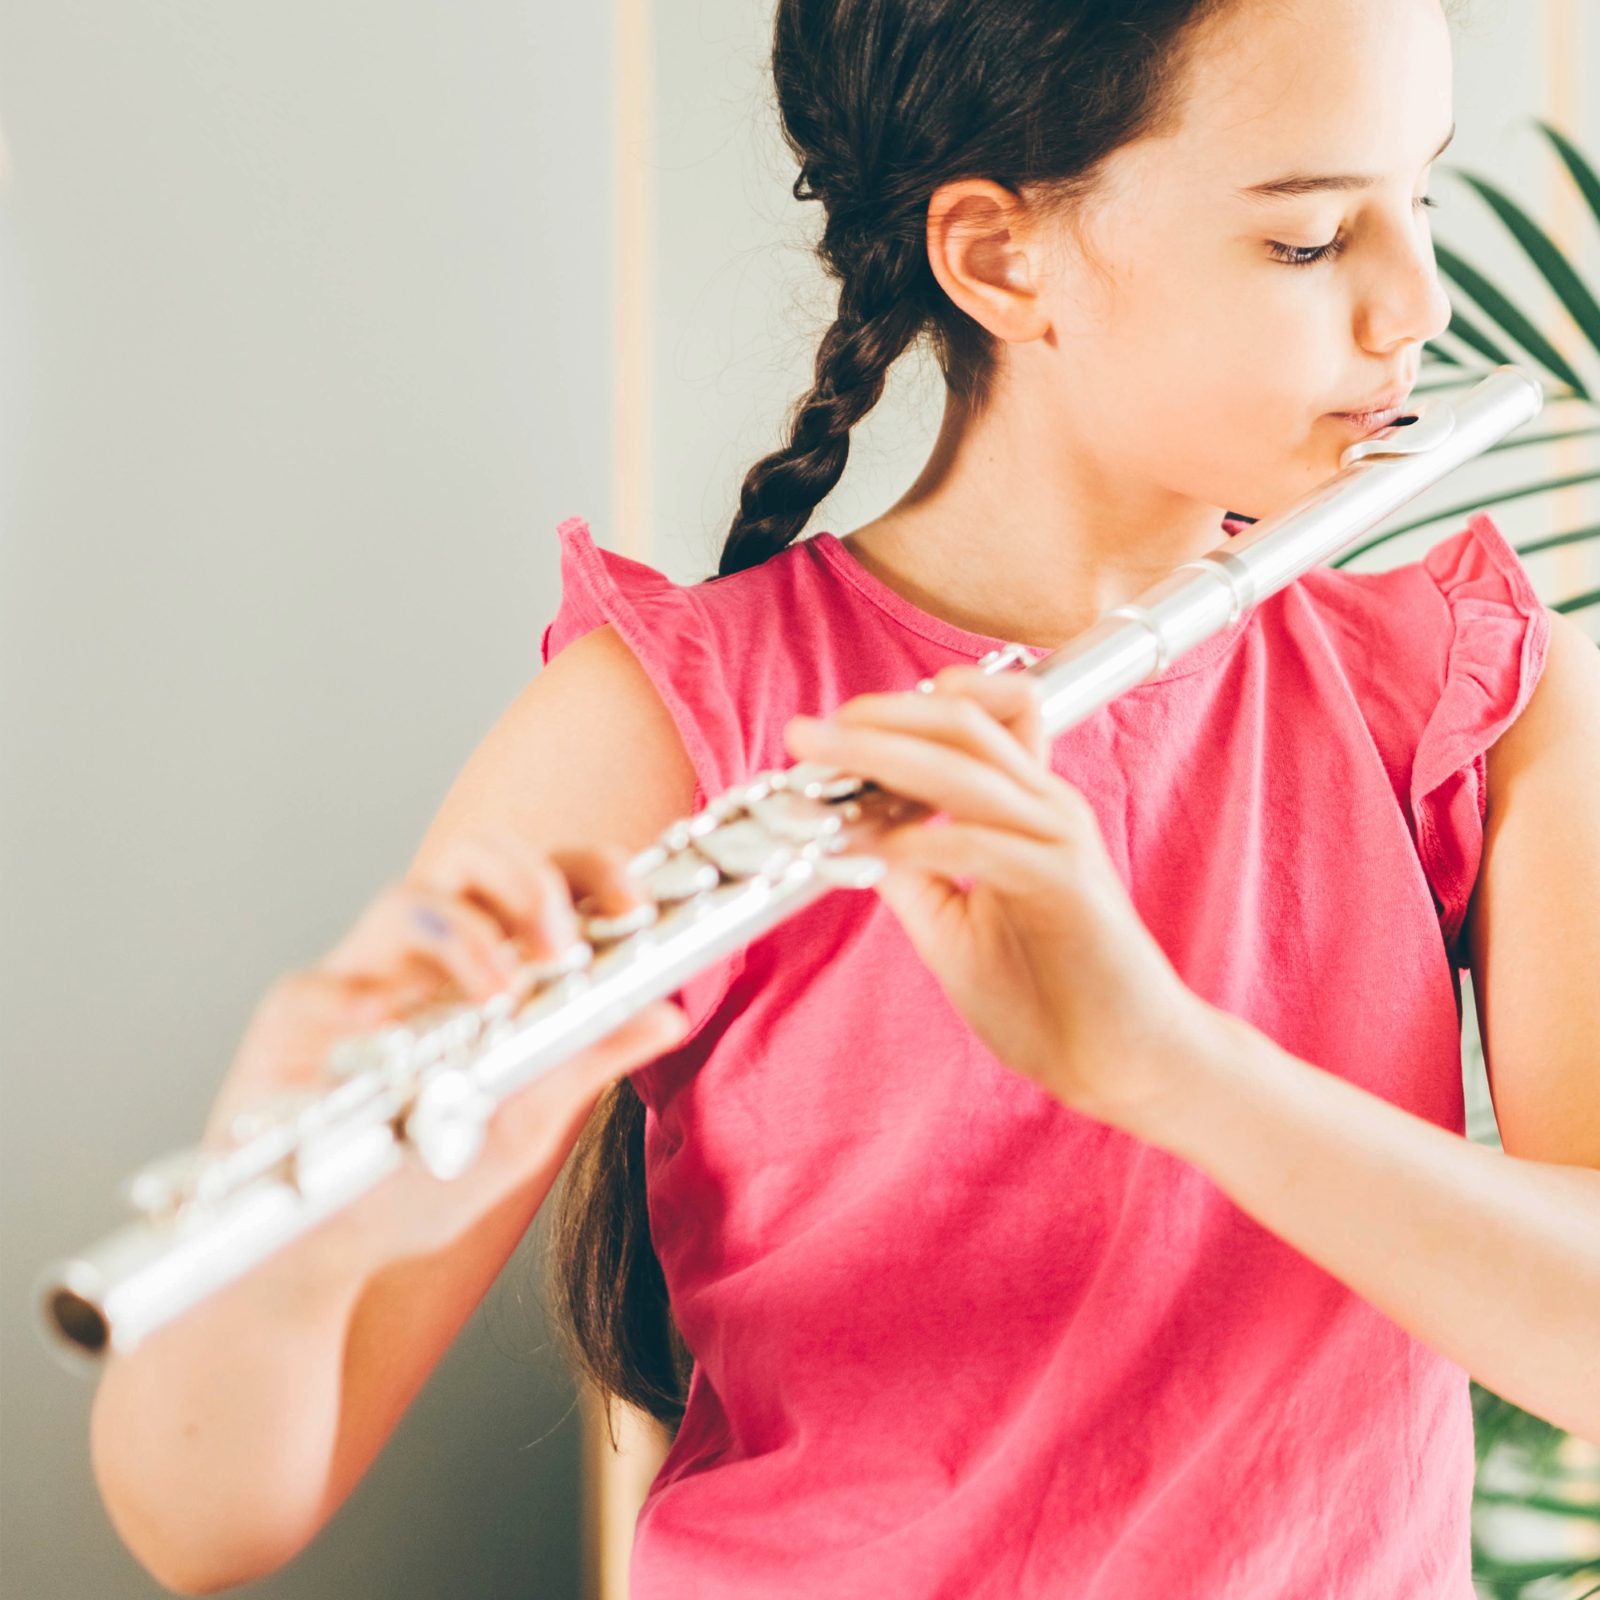 50-minütiger Flötenunterricht : photo 1